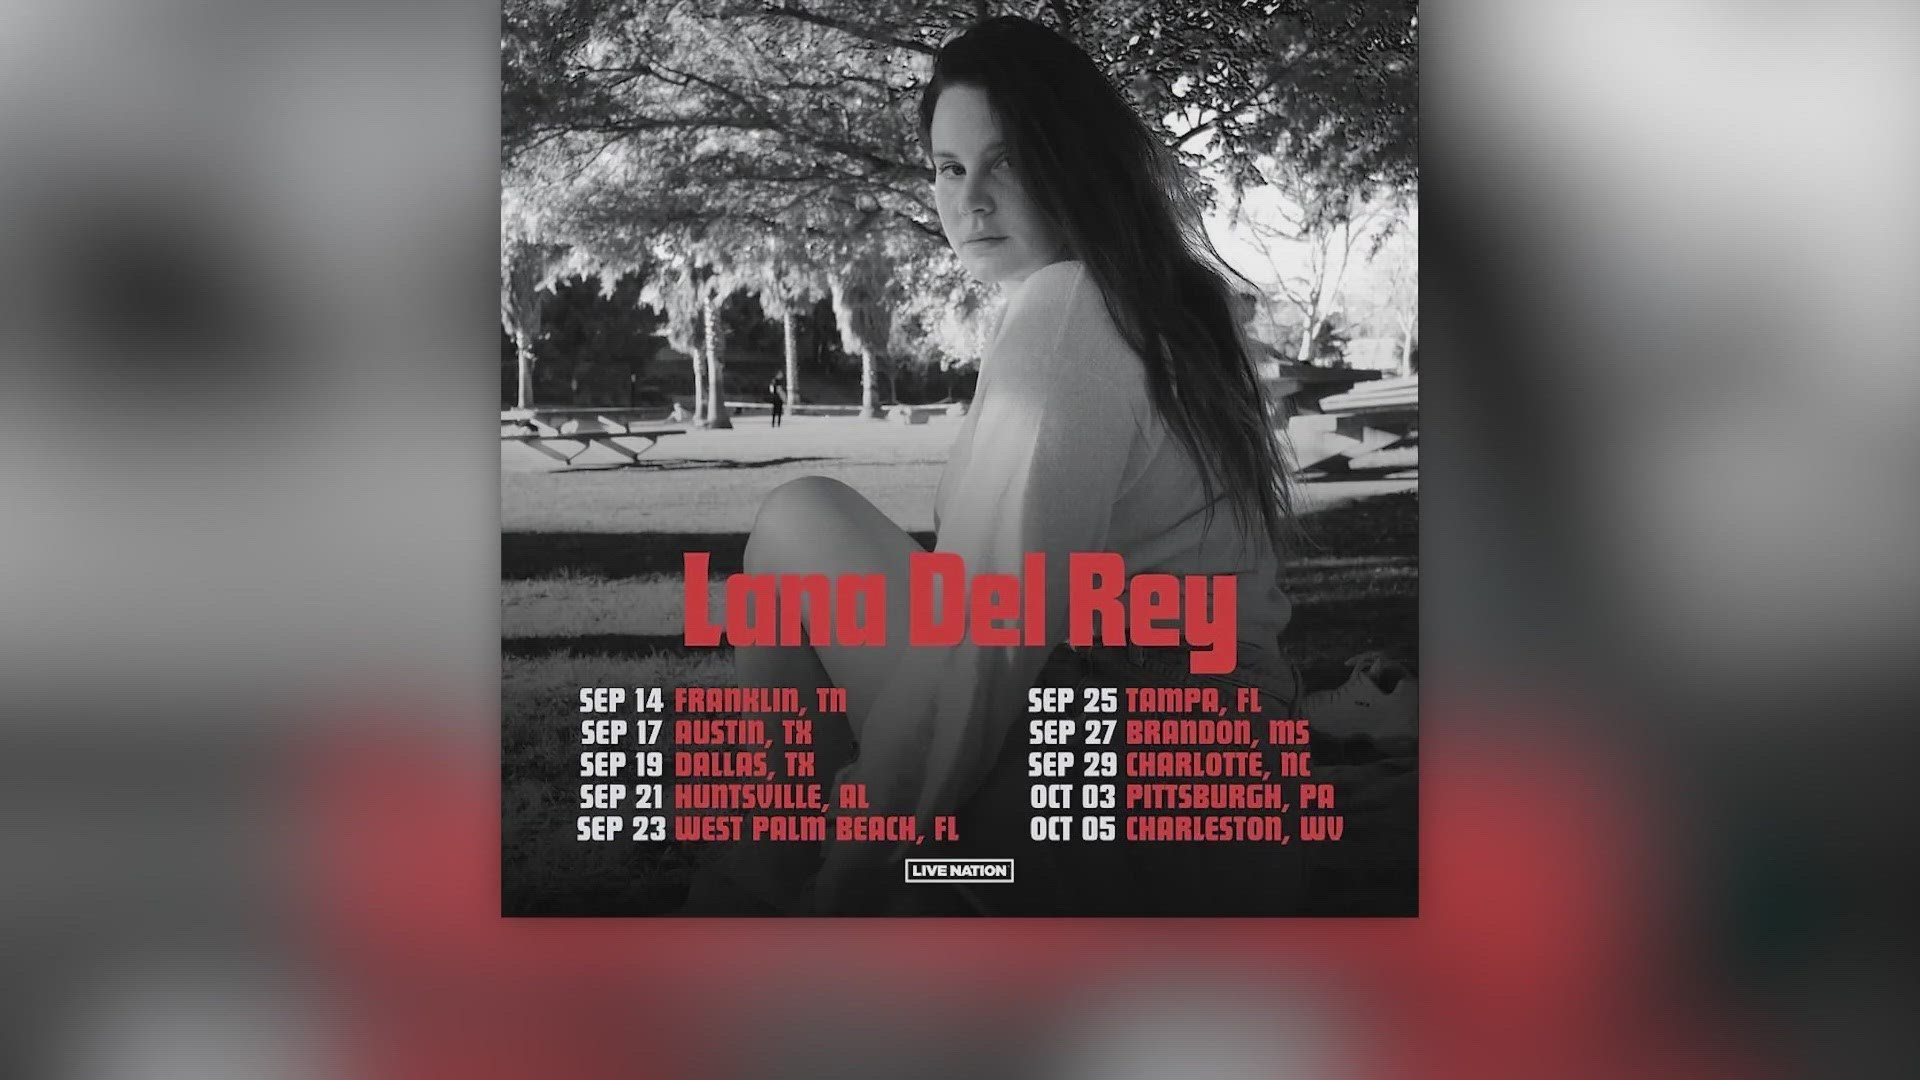 Lana Del Rey is coming to Dallas!